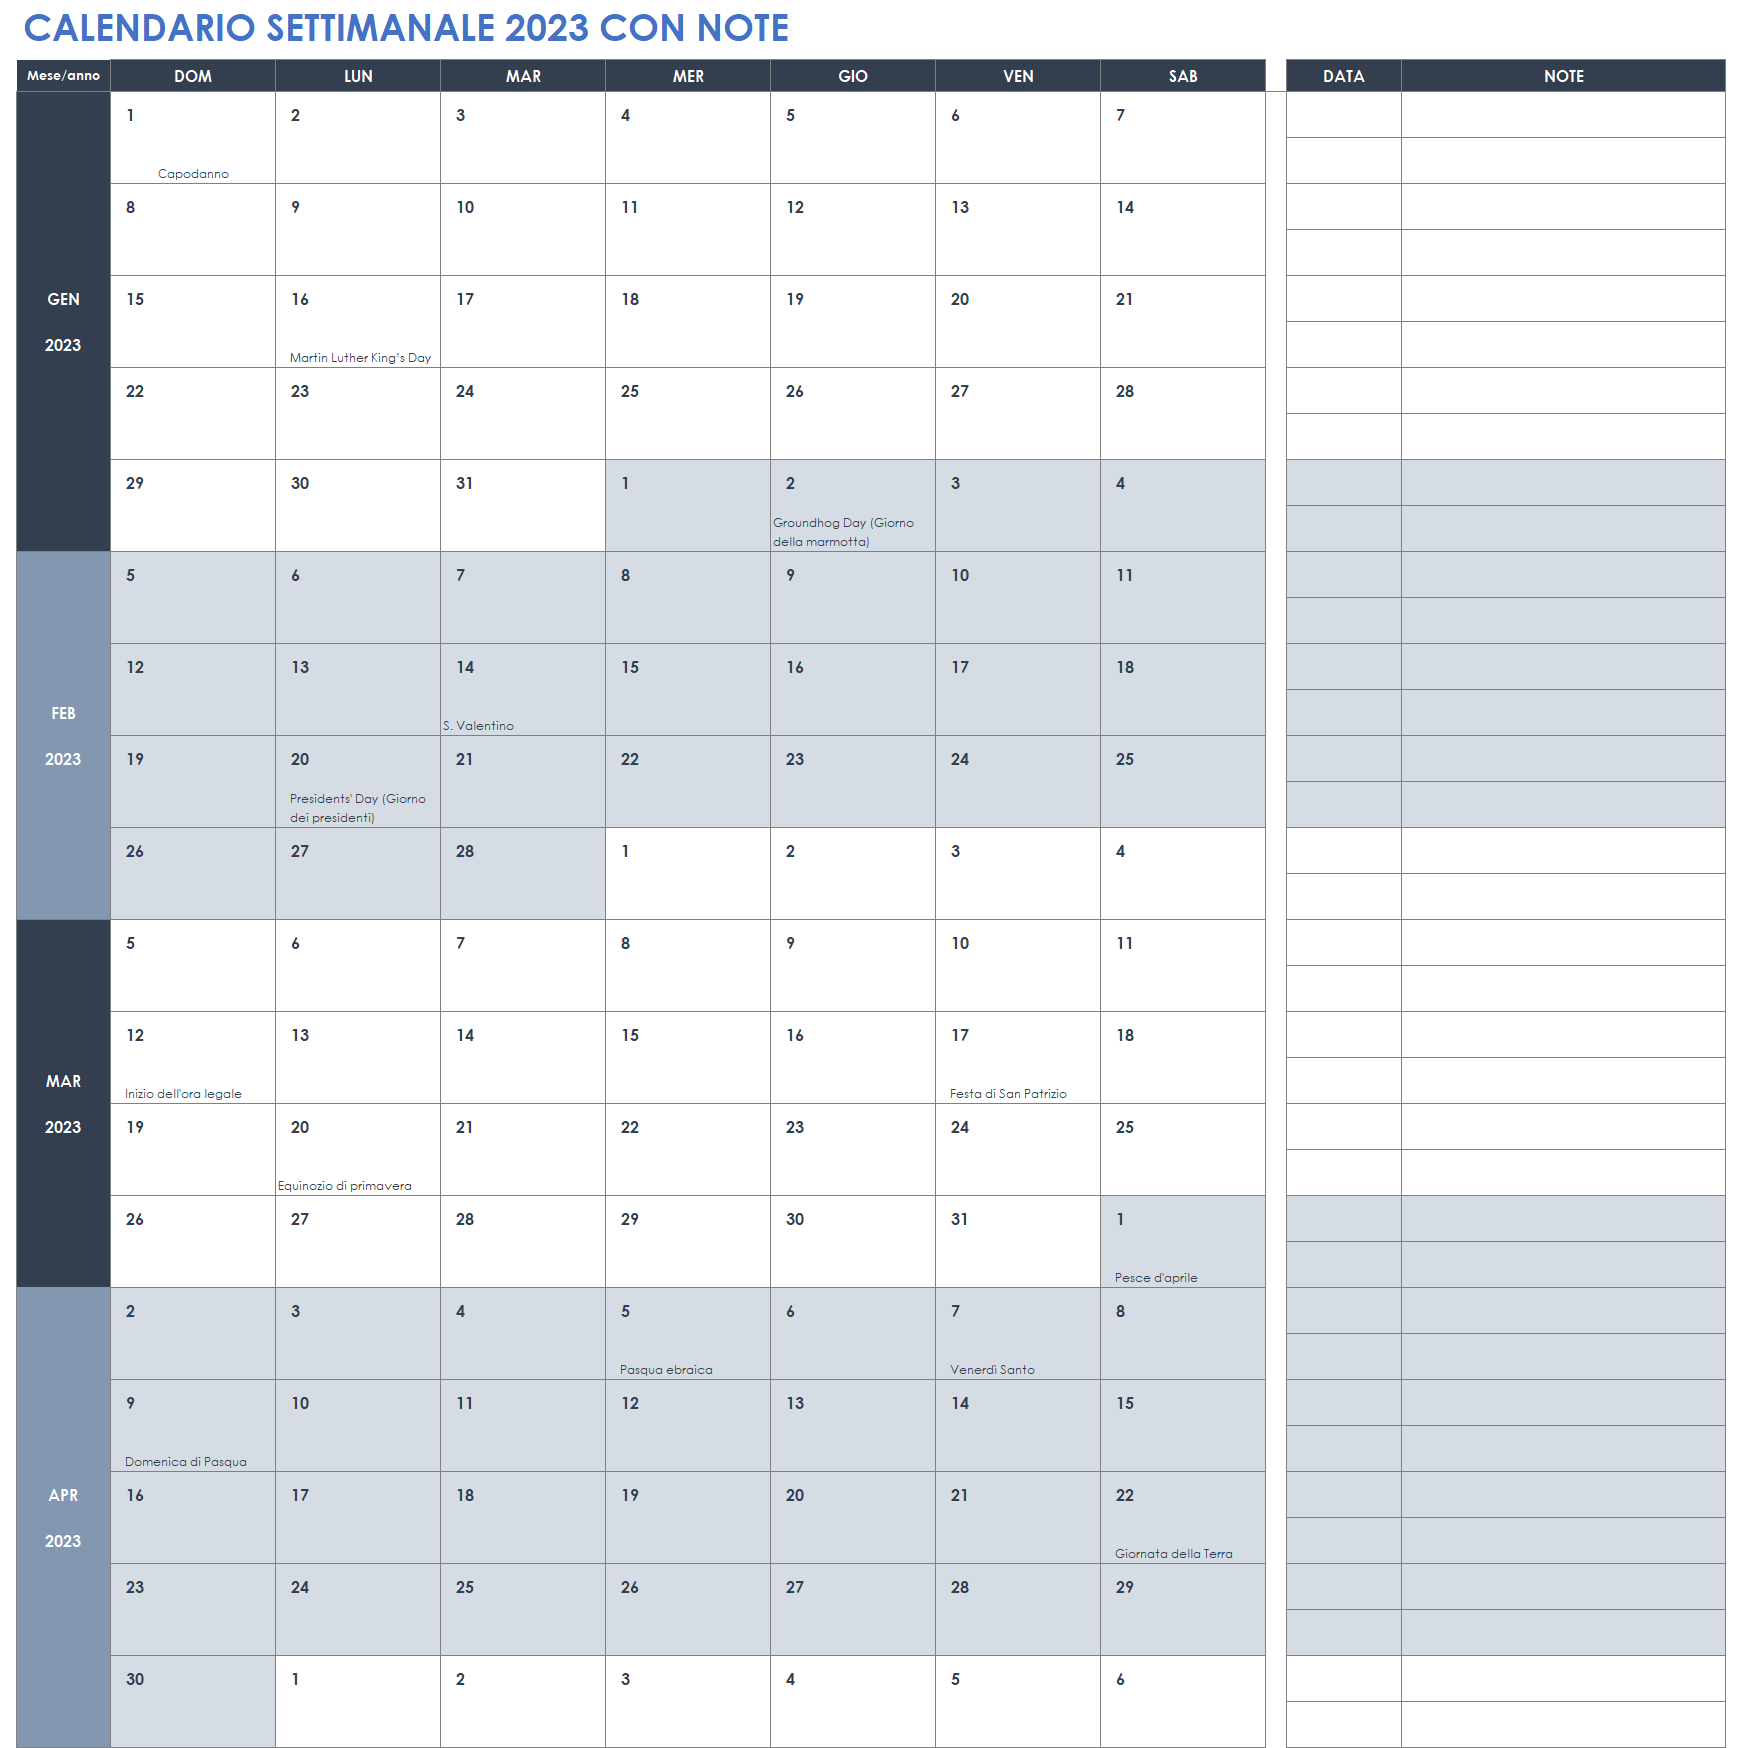 Calendario settimanale 2023 con note